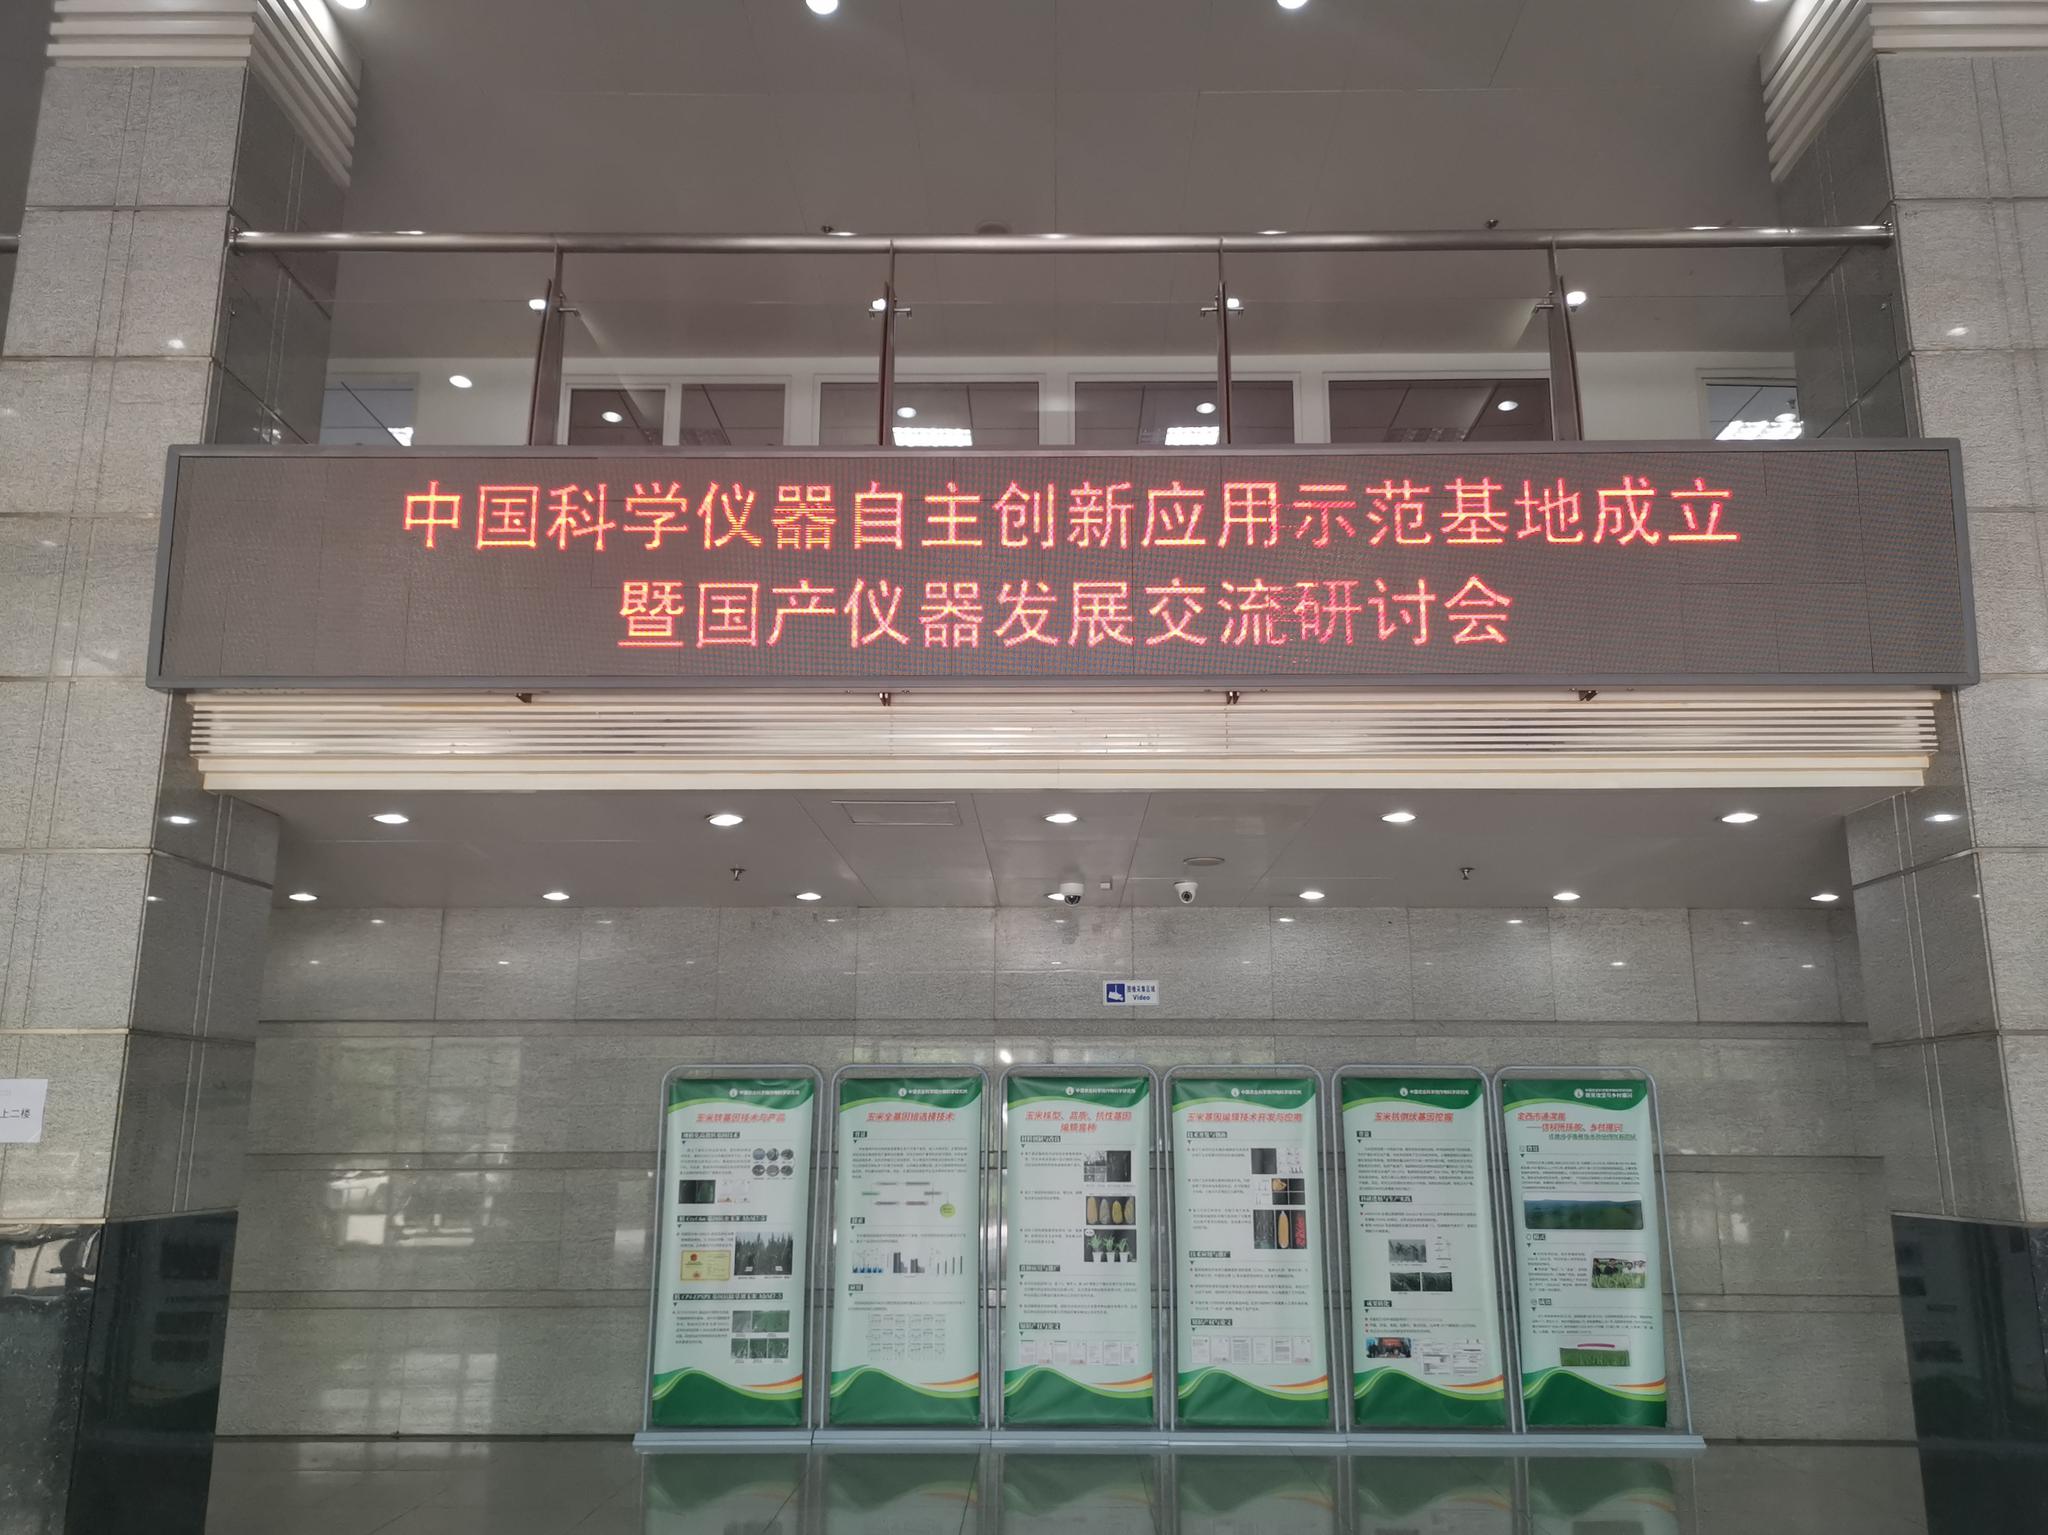 中国科学仪器自主创新应用示范基地在中国农科院成立